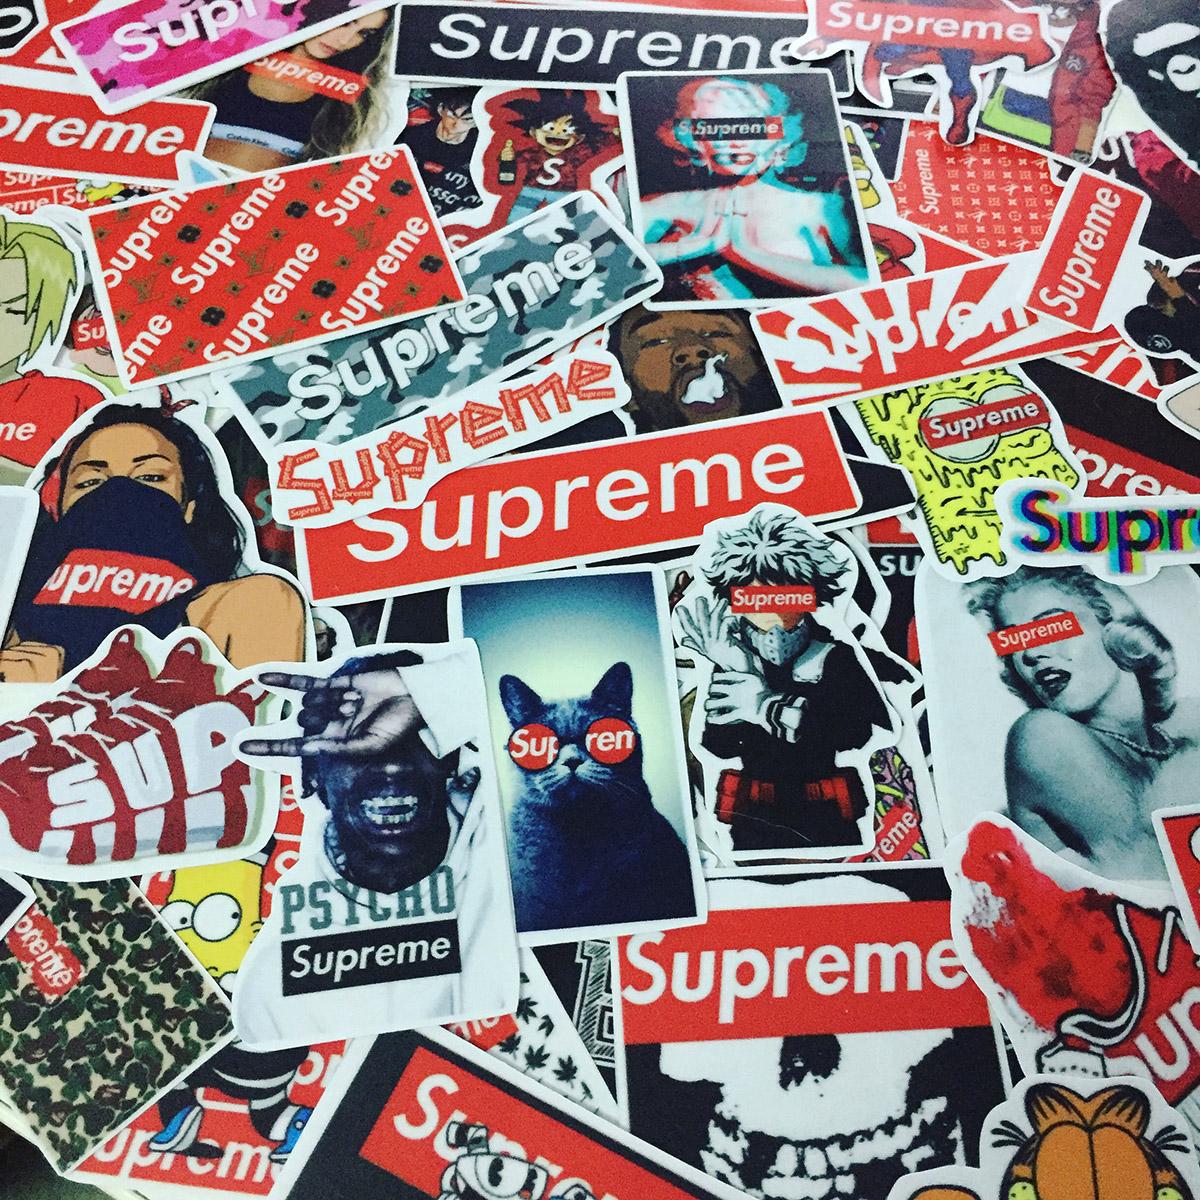 Sticker Supreme là lựa chọn không thể thiếu cho các tín đồ thời trang. Với các bản thiết kế độc đáo và cá tính, các sticker Supreme sẽ tăng cường phong cách của bạn và giúp bạn thể hiện đẳng cấp của bản thân.